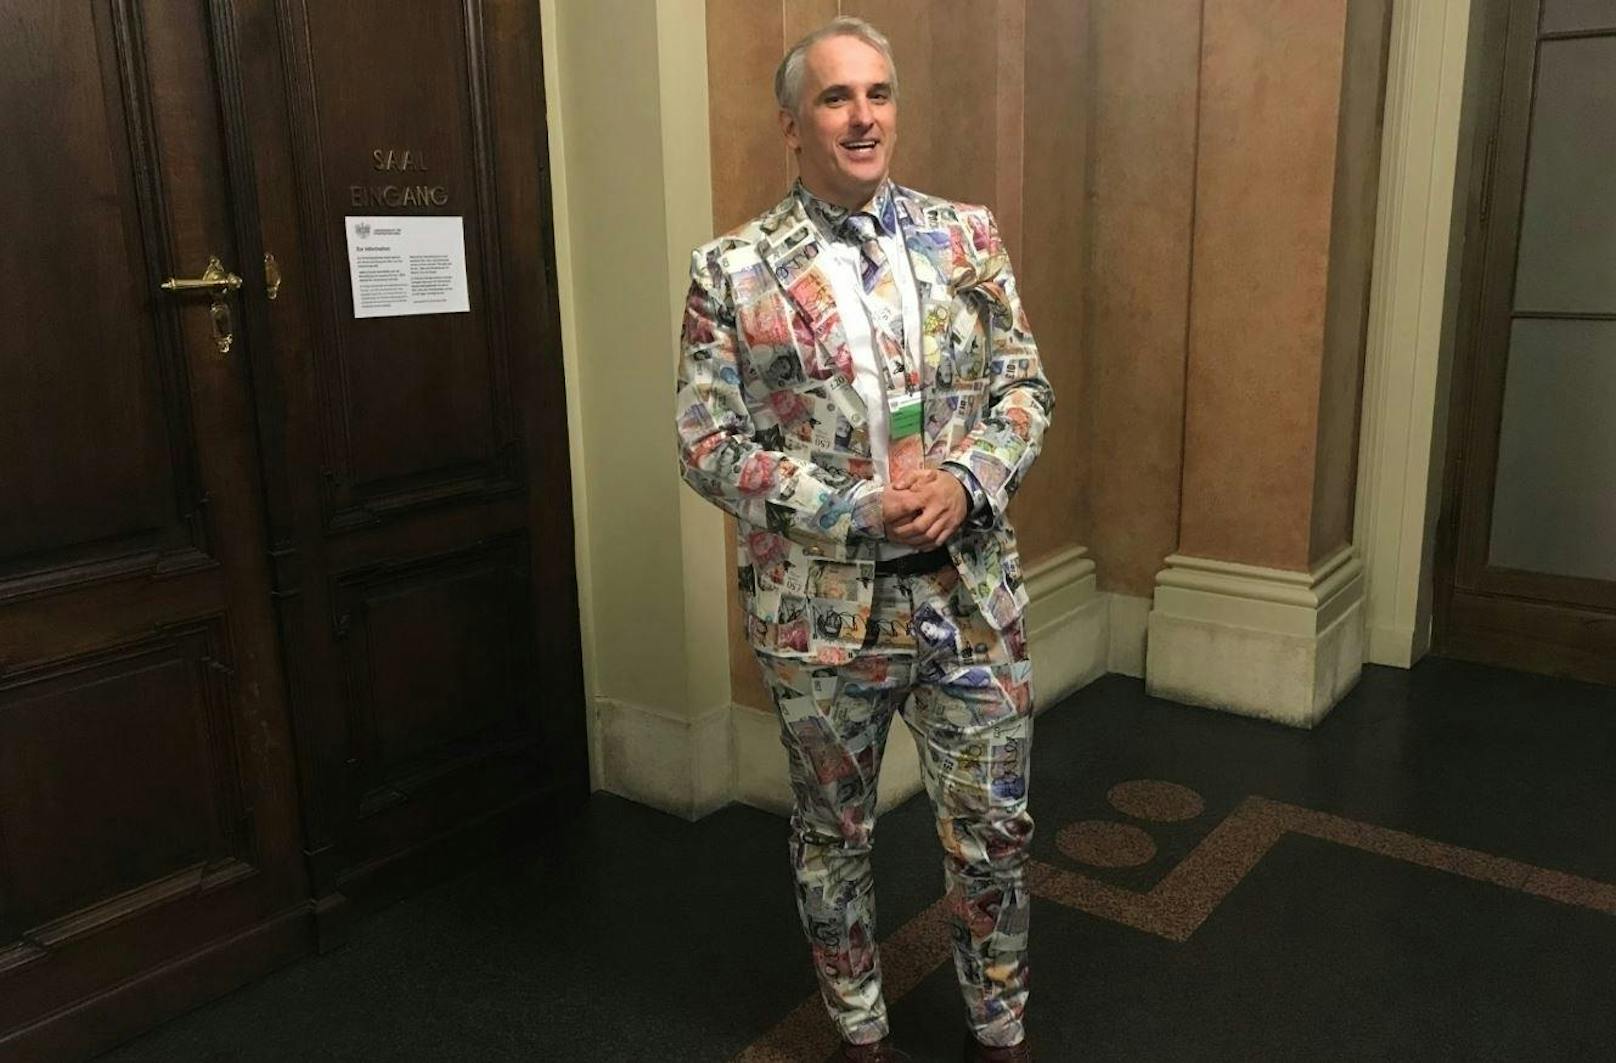 Anwalt Michael Dohr (er vertritt einen ehemaligen Porr-Mitarbeiter) ist bekannt für seine ausgefallenen Outfits.